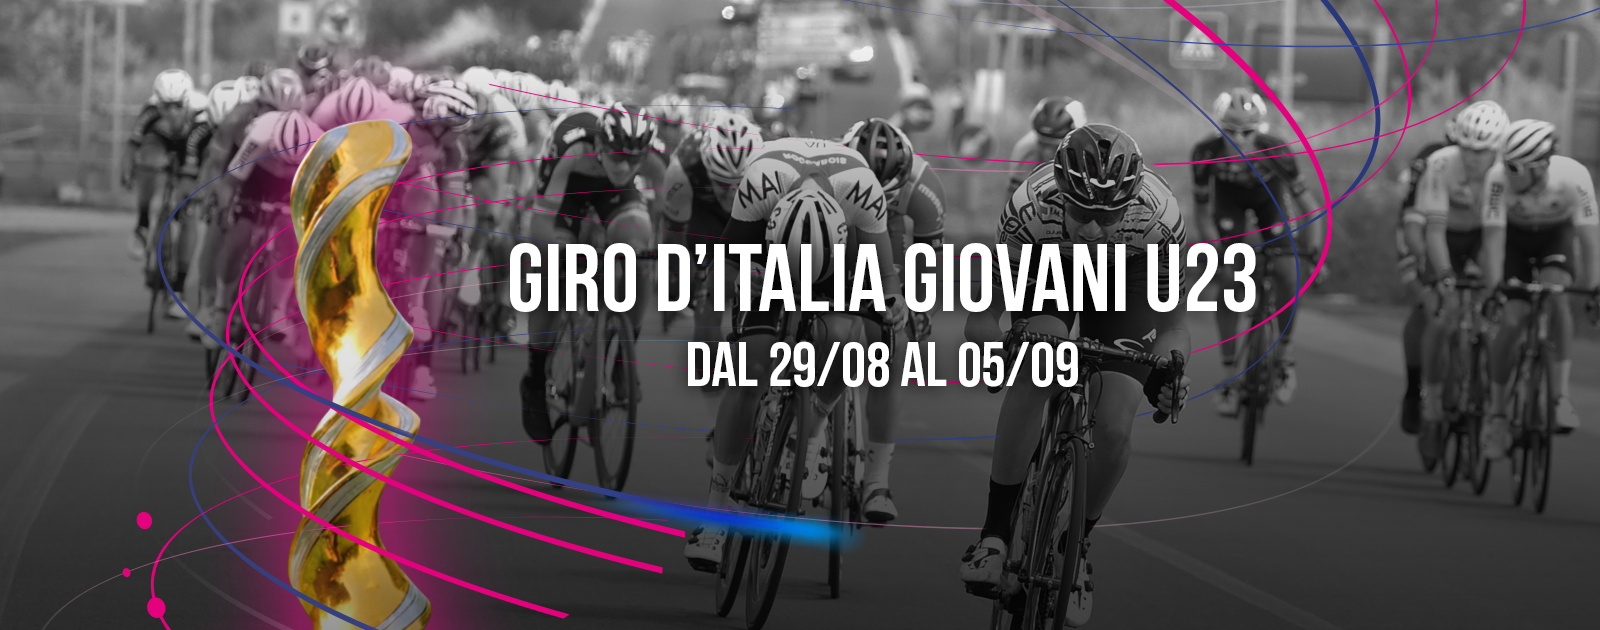 Giro d'Italia under 23, ecco l'elenco dei Team